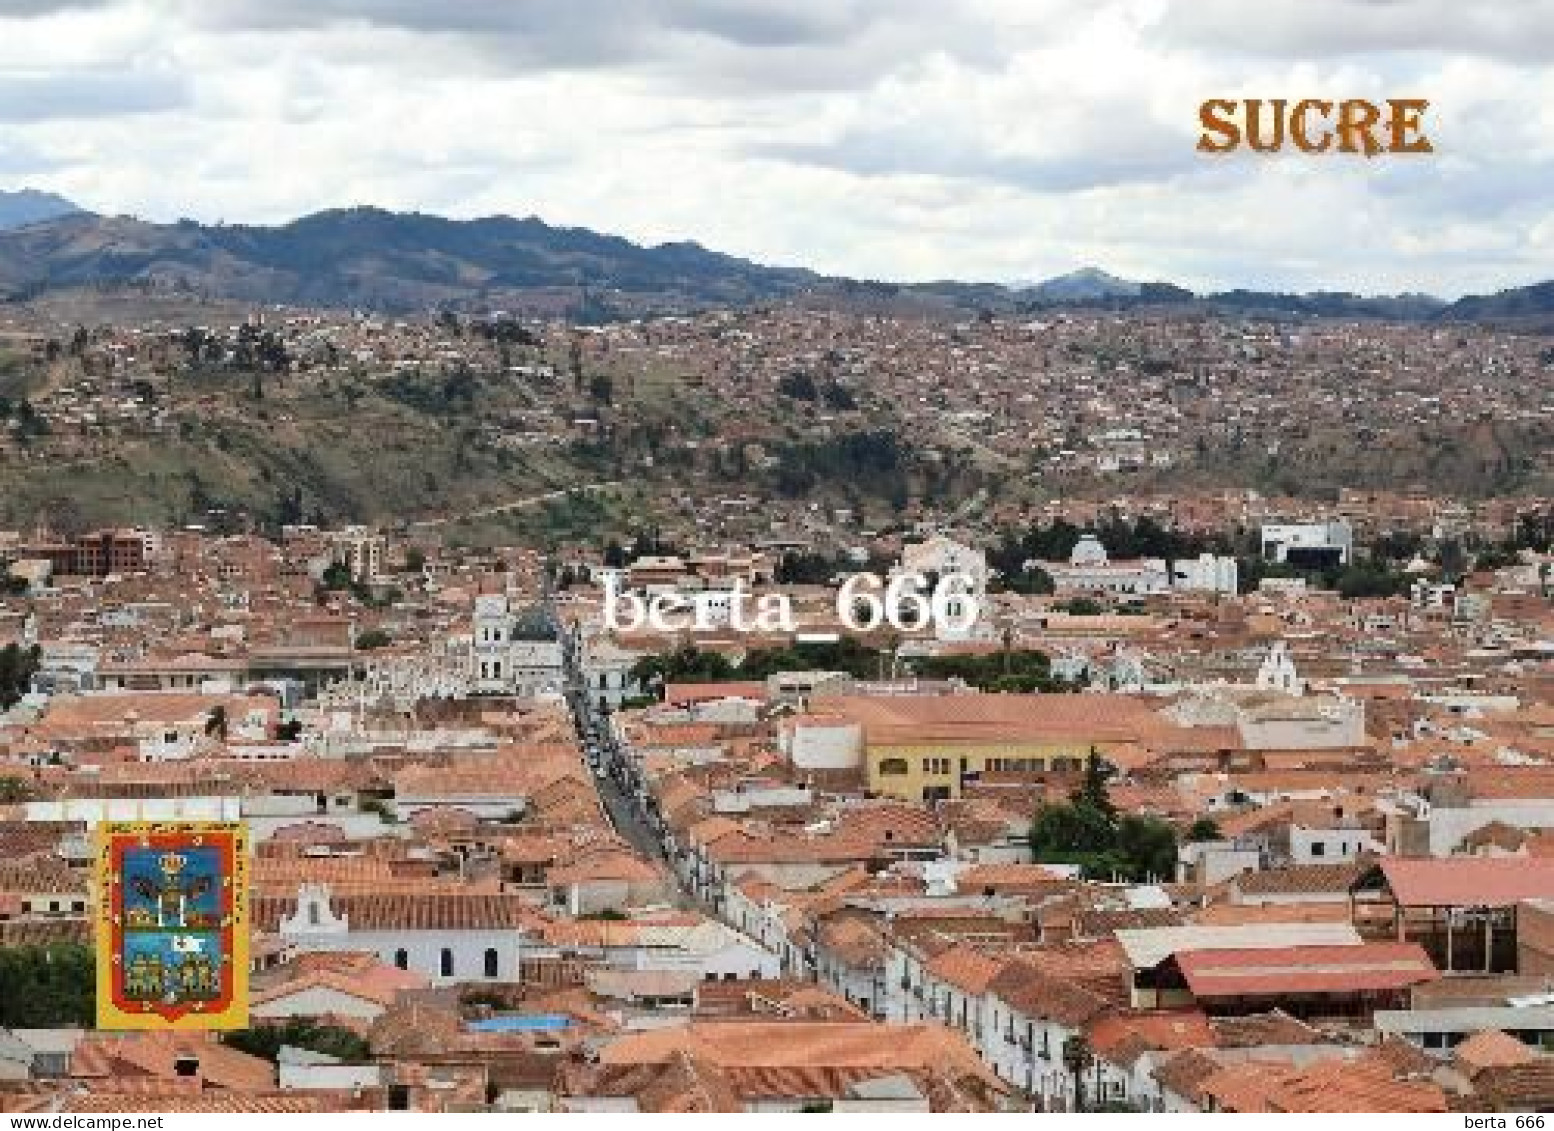 Bolivia Sucre Overview UNESCO New Postcard - Bolivia